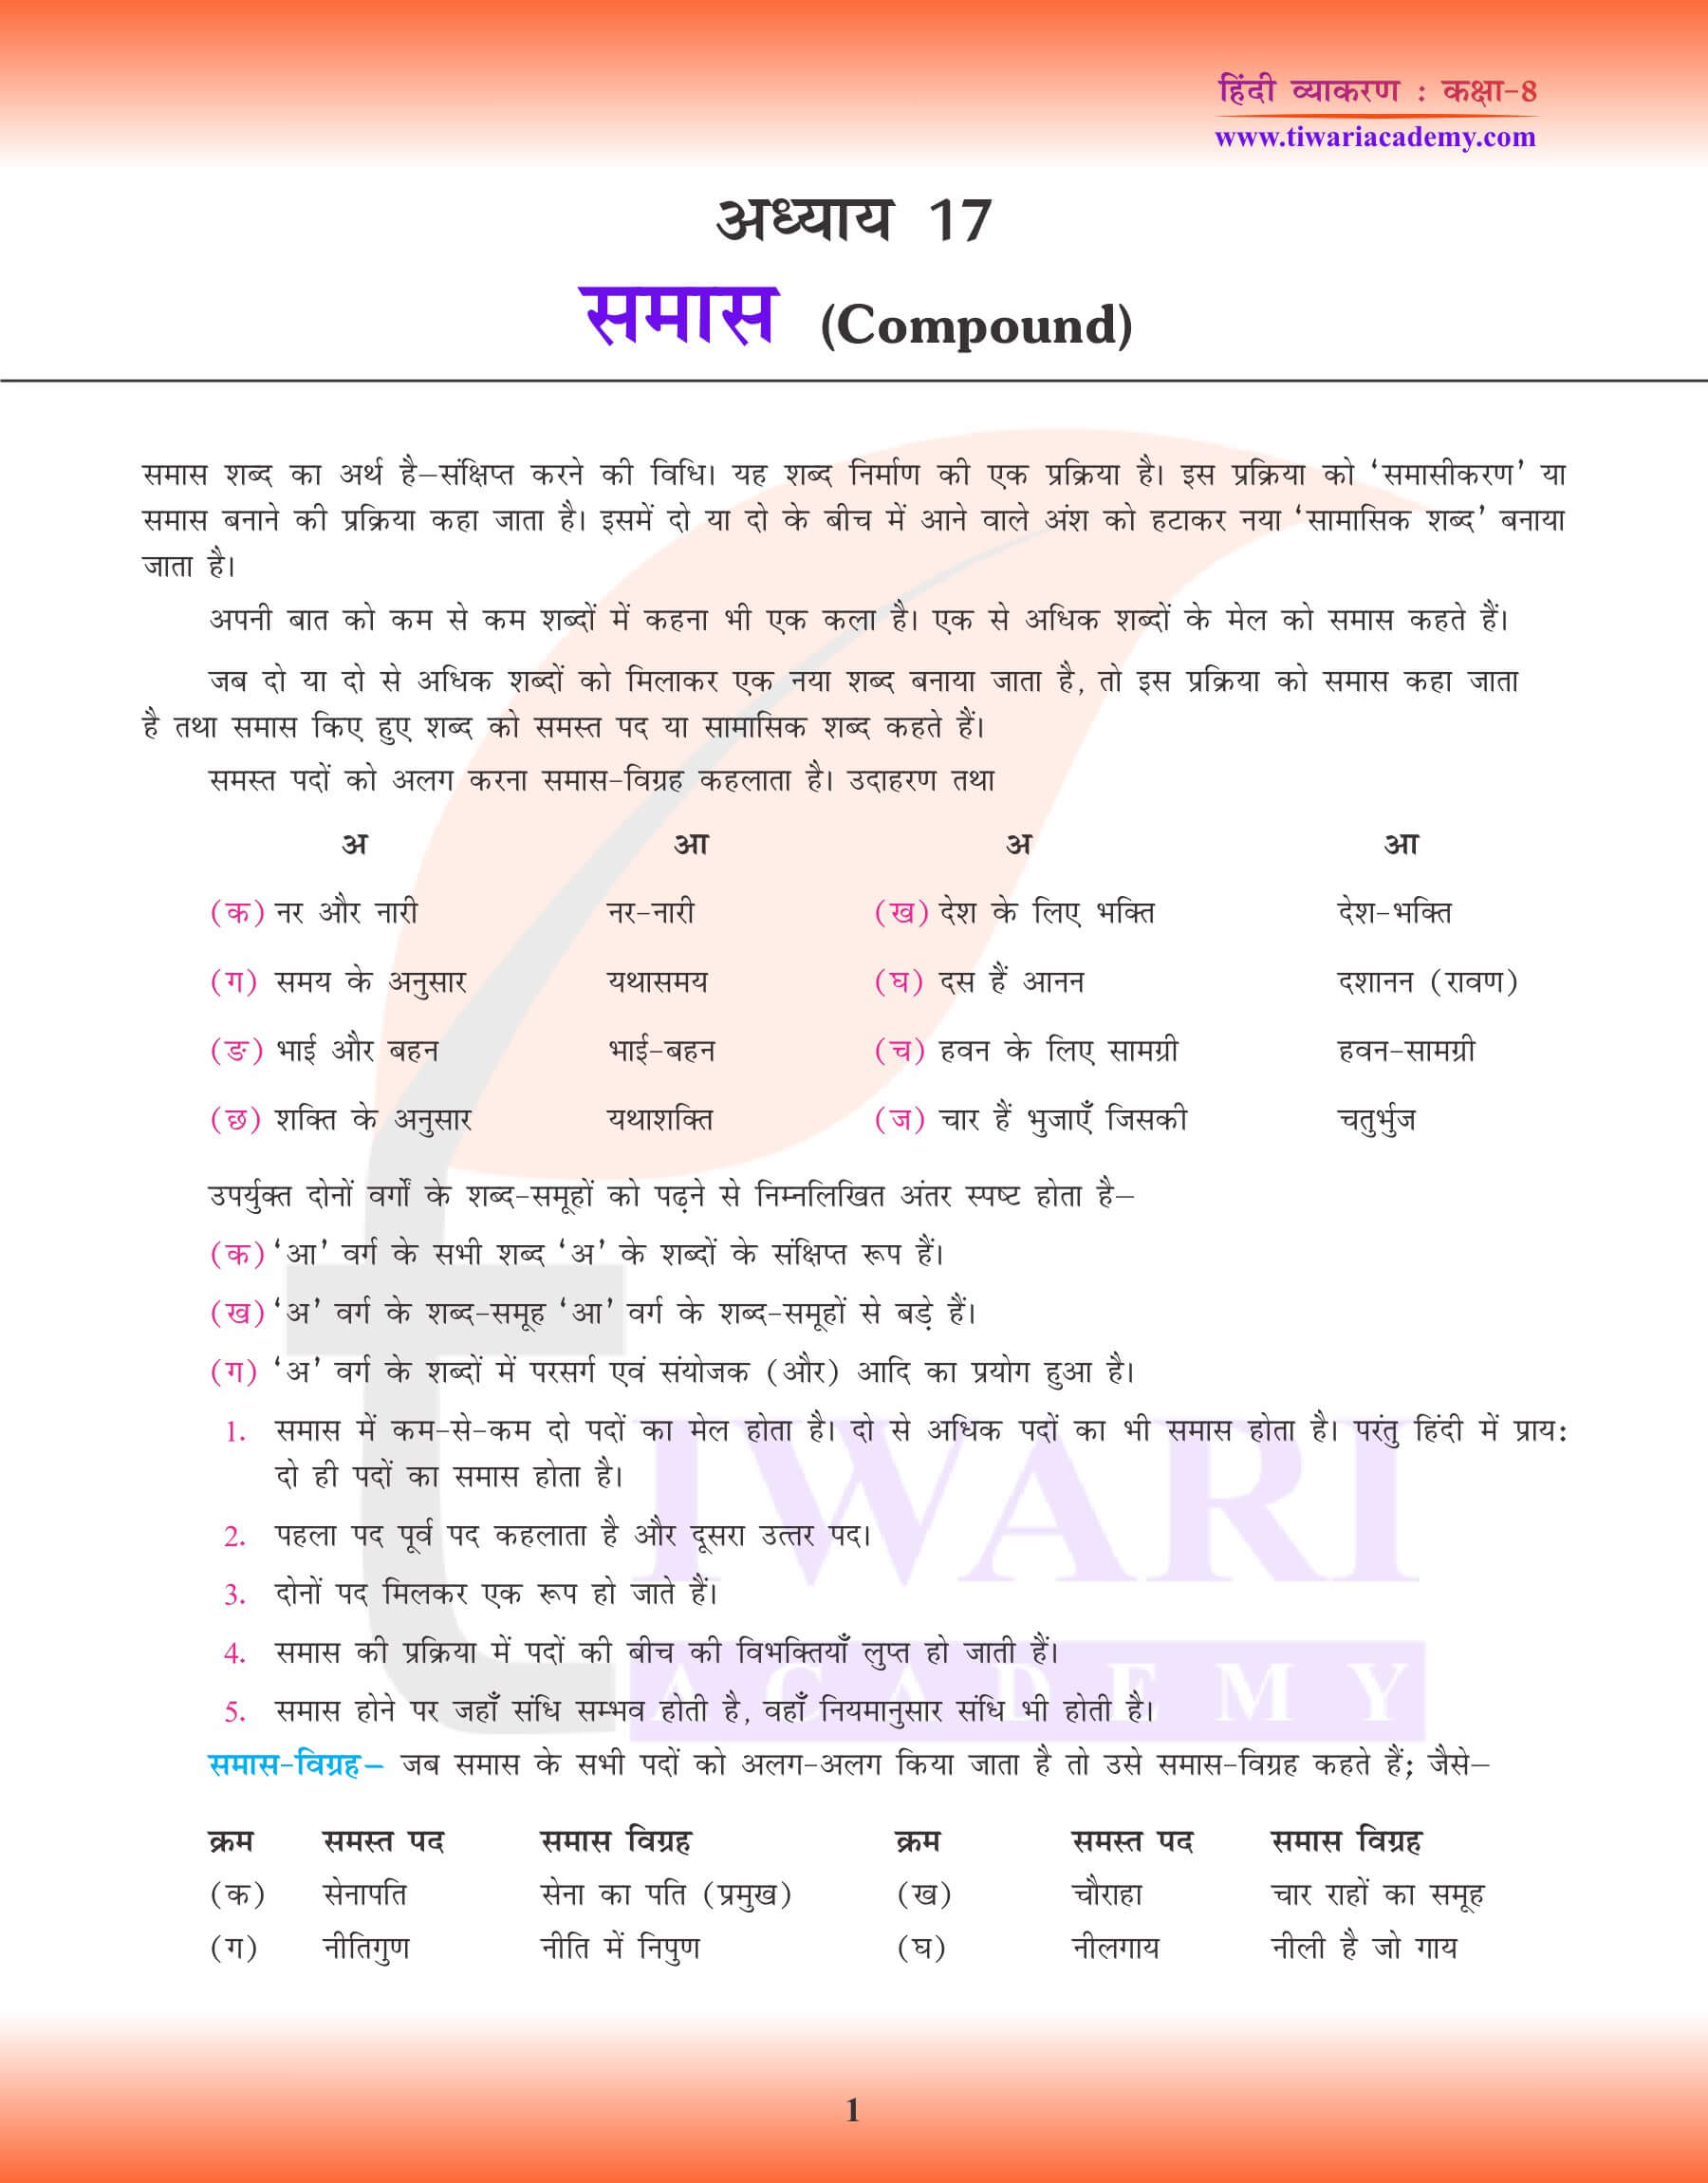 कक्षा 8 हिंदी व्याकरण में समास